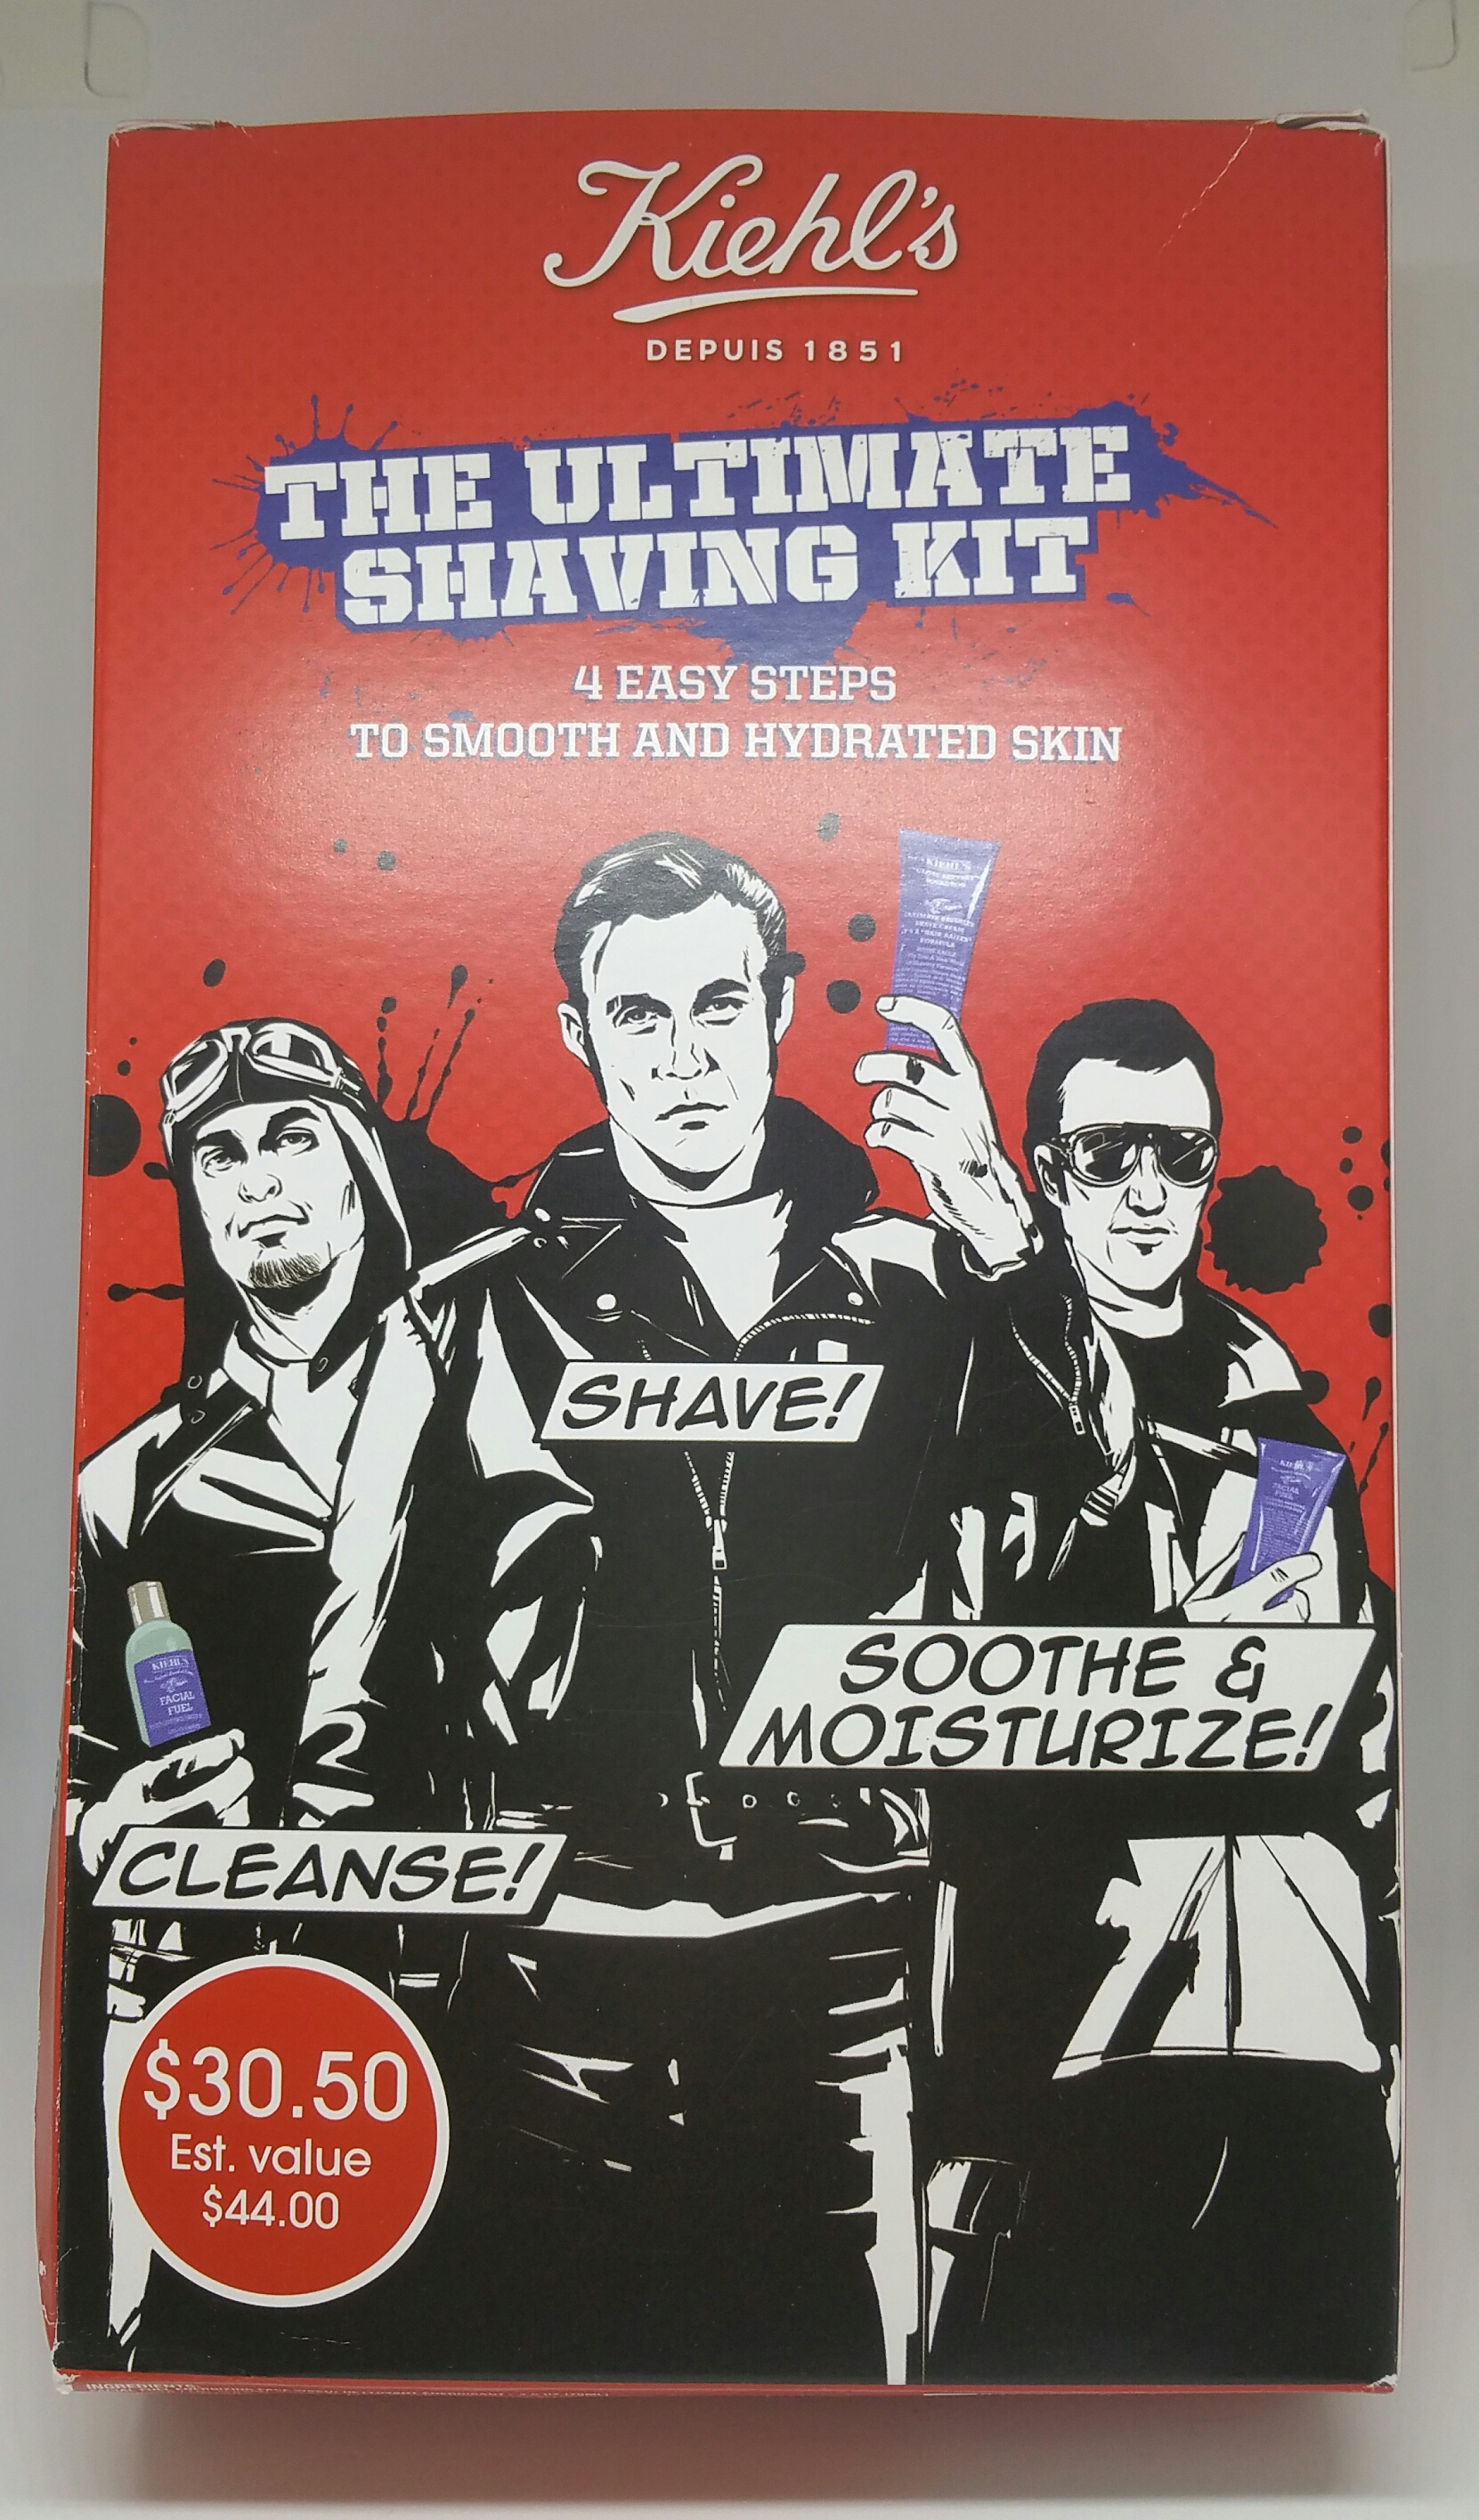 Kiehl’s – The Ultimate Shaving kit